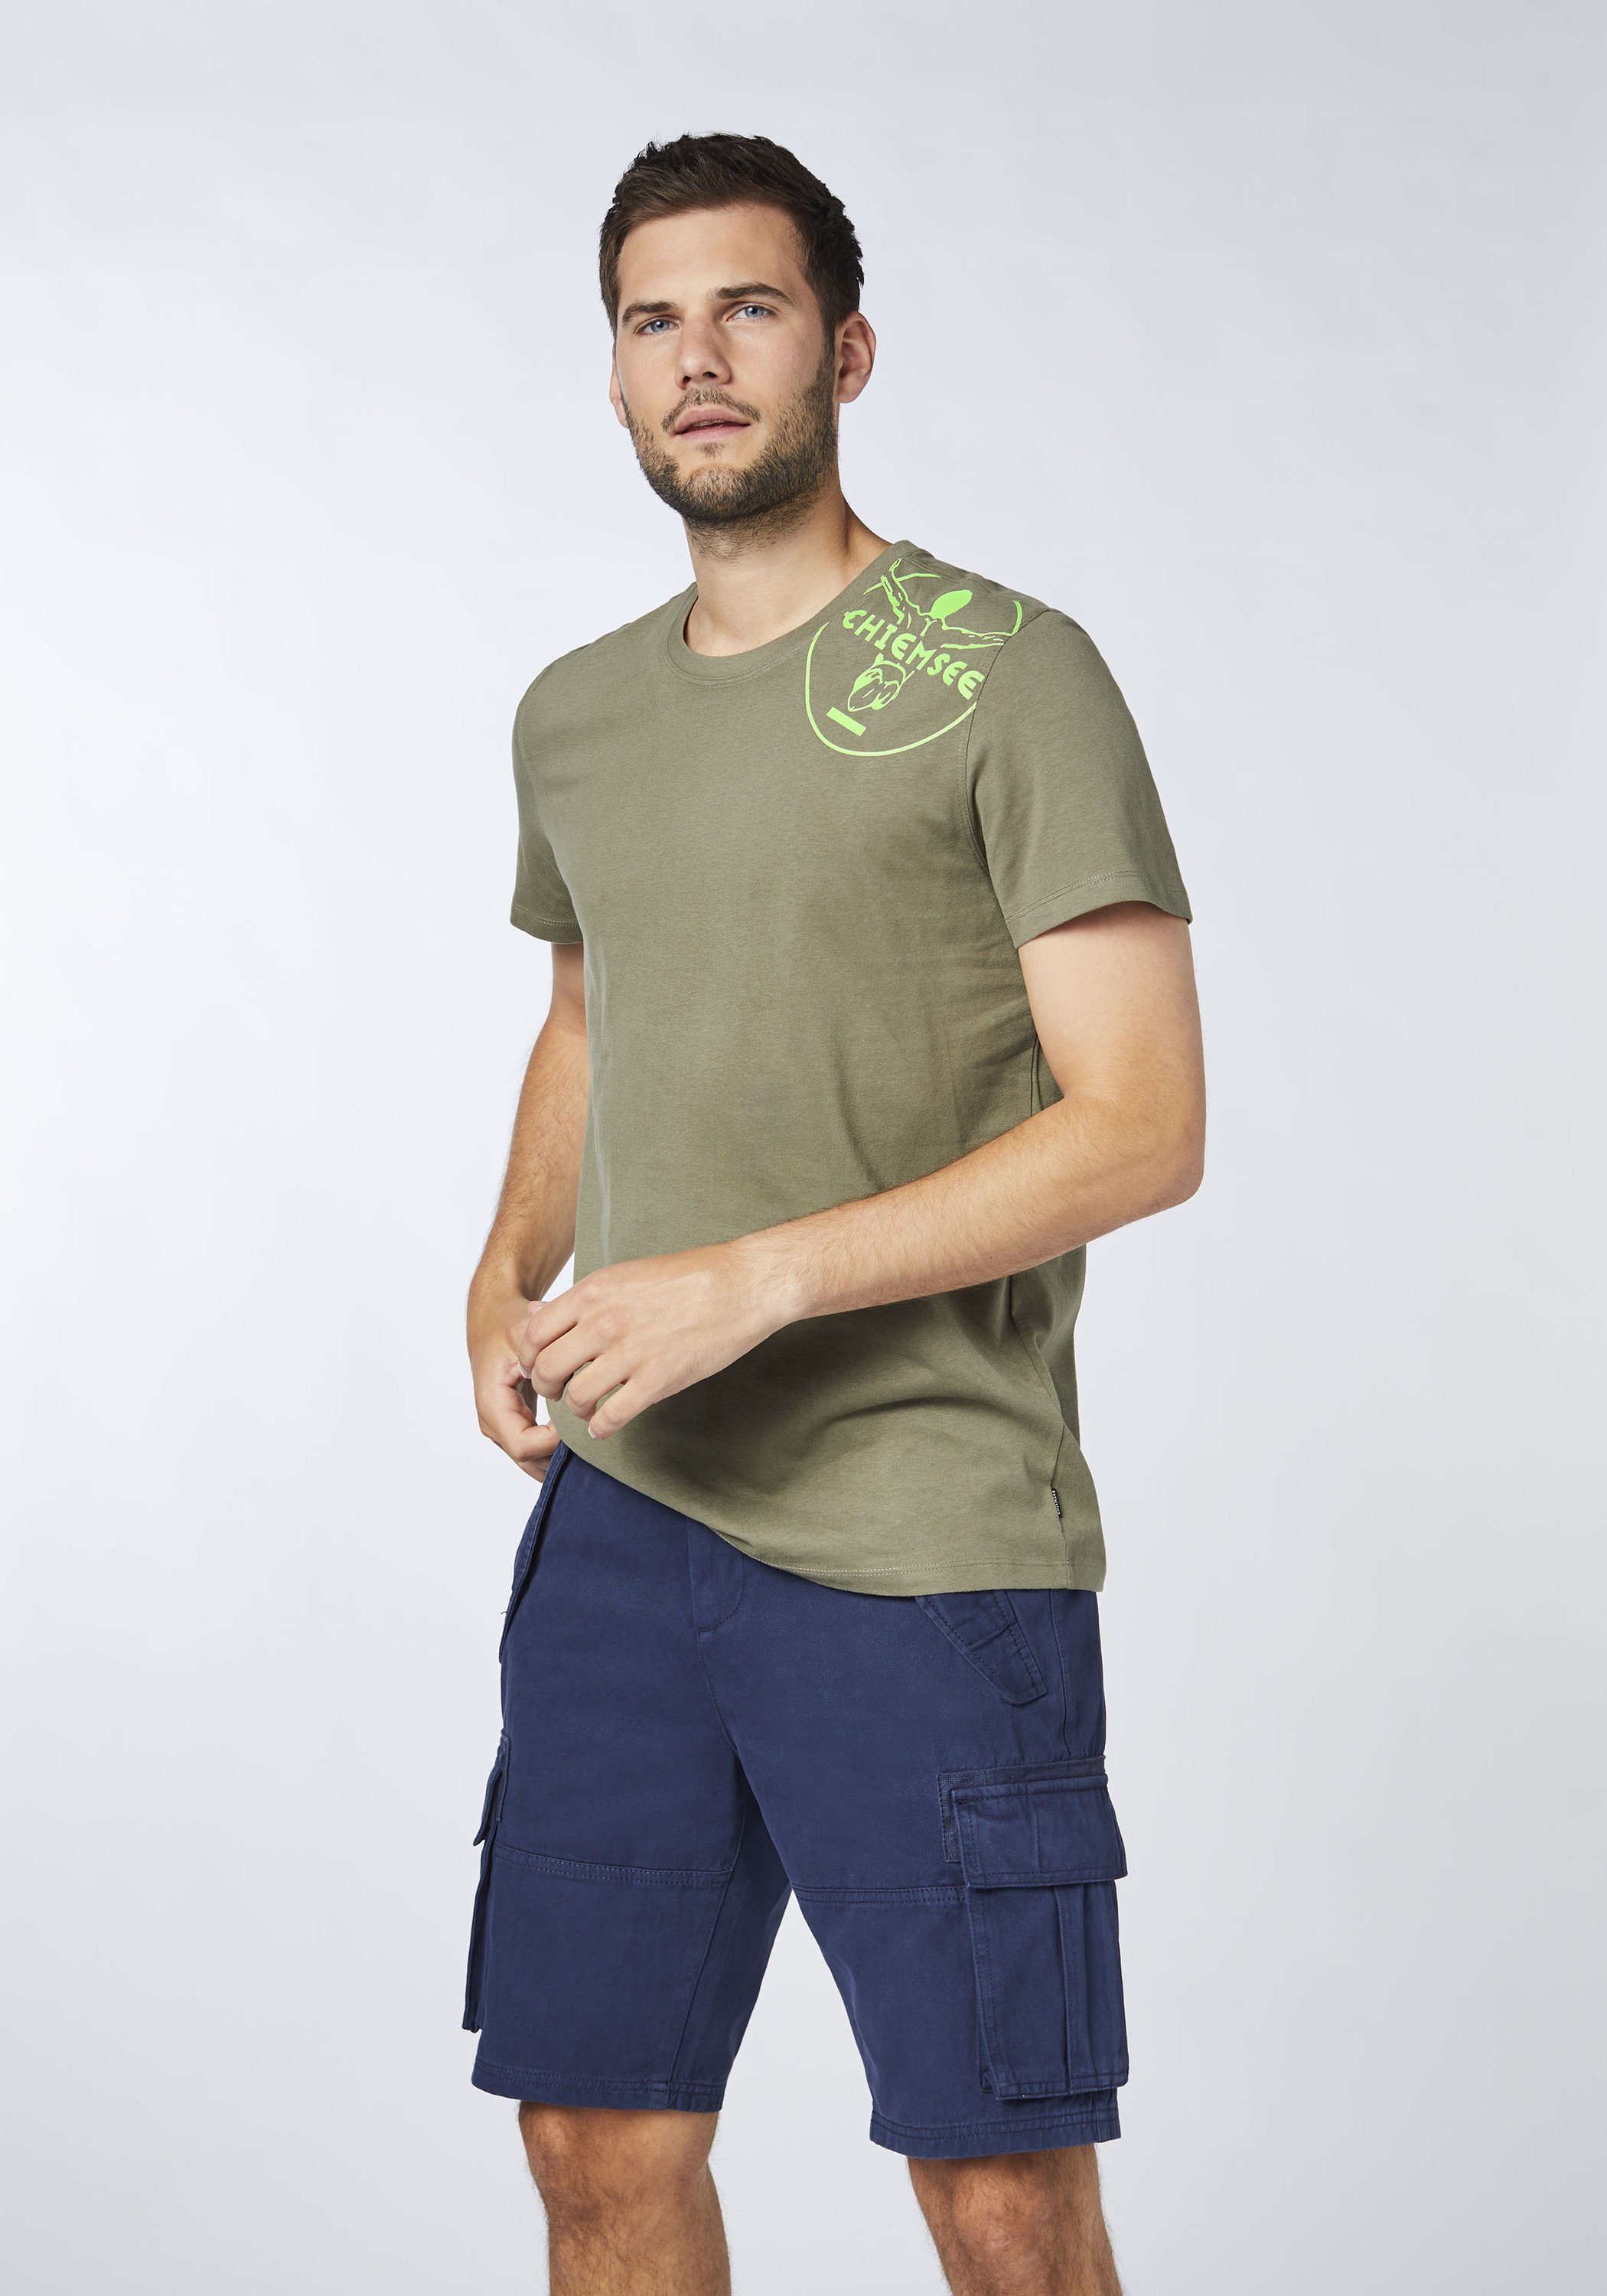 1 T-Shirt mit Chiemsee Olive Print-Shirt Jumper-Motiv Dusty